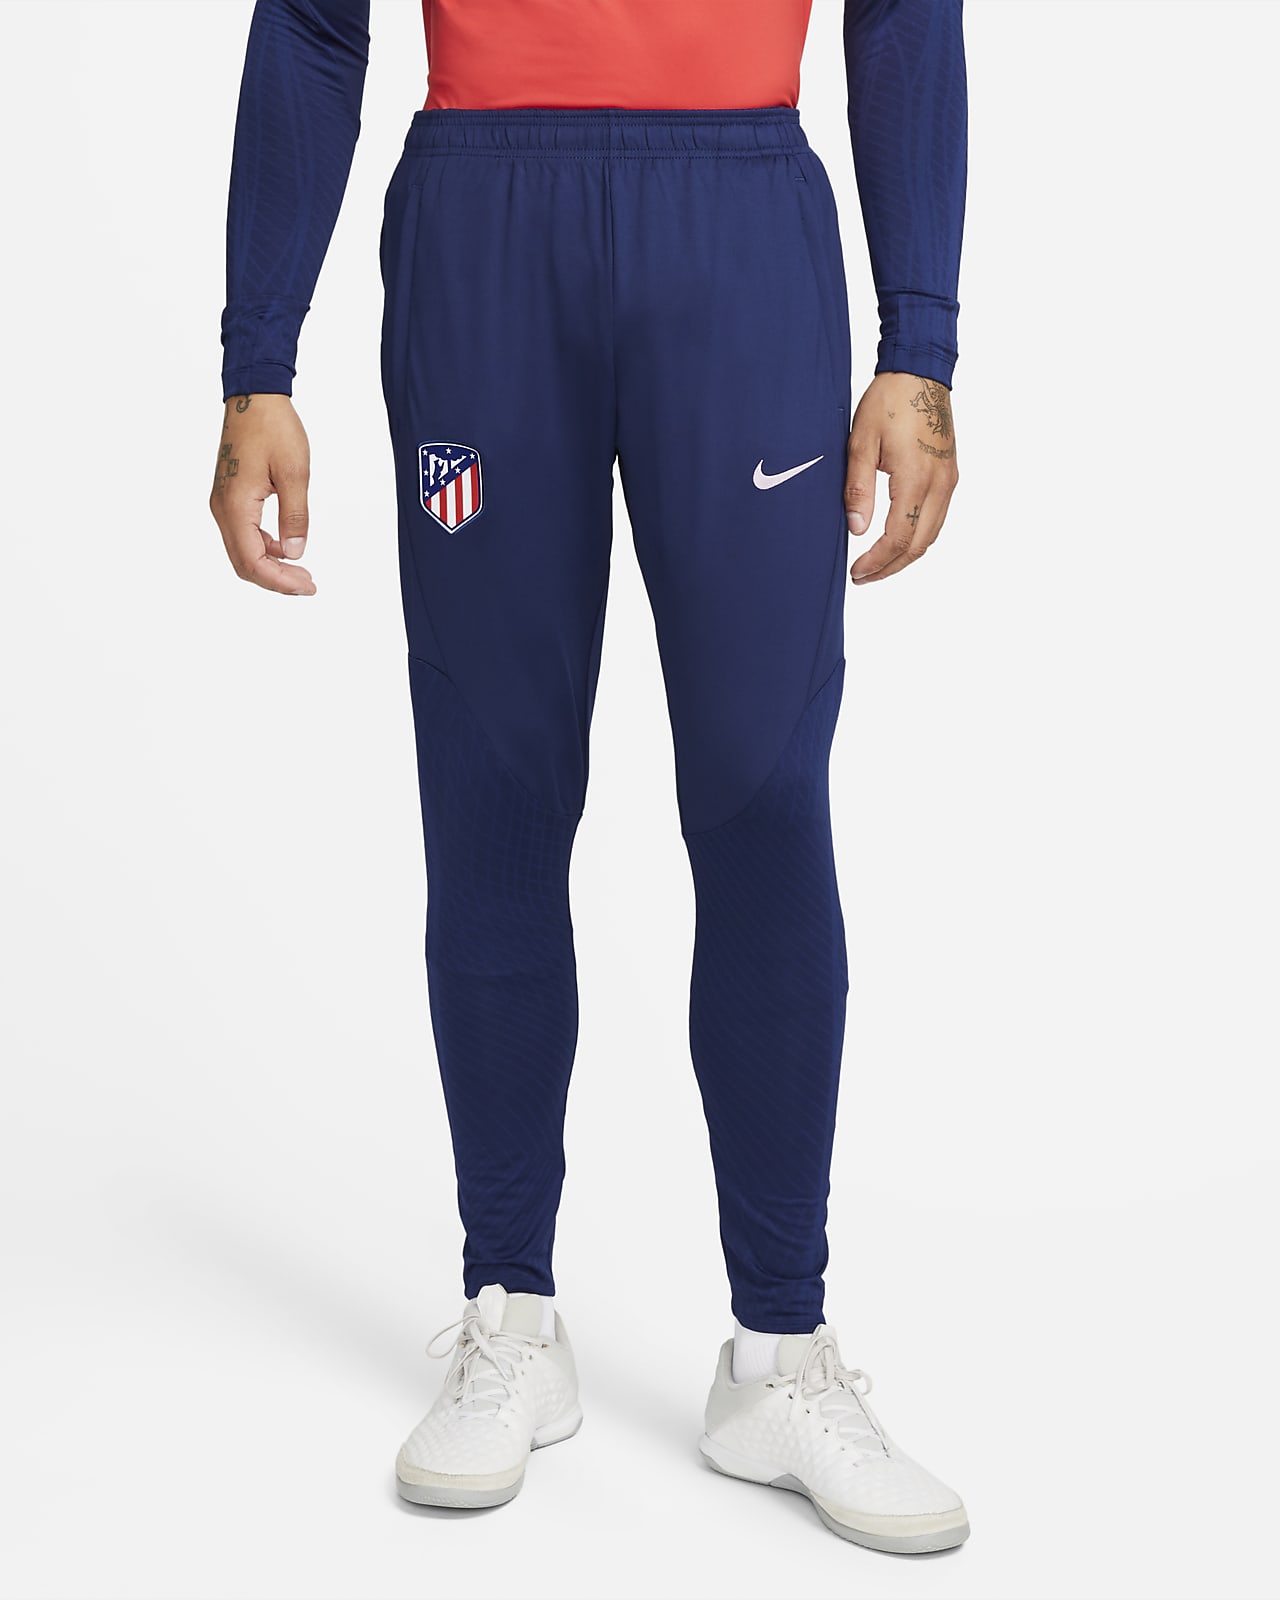 Męskie dzianinowe spodnie piłkarskie Atlético Madryt Strike Nike Dri-FIT